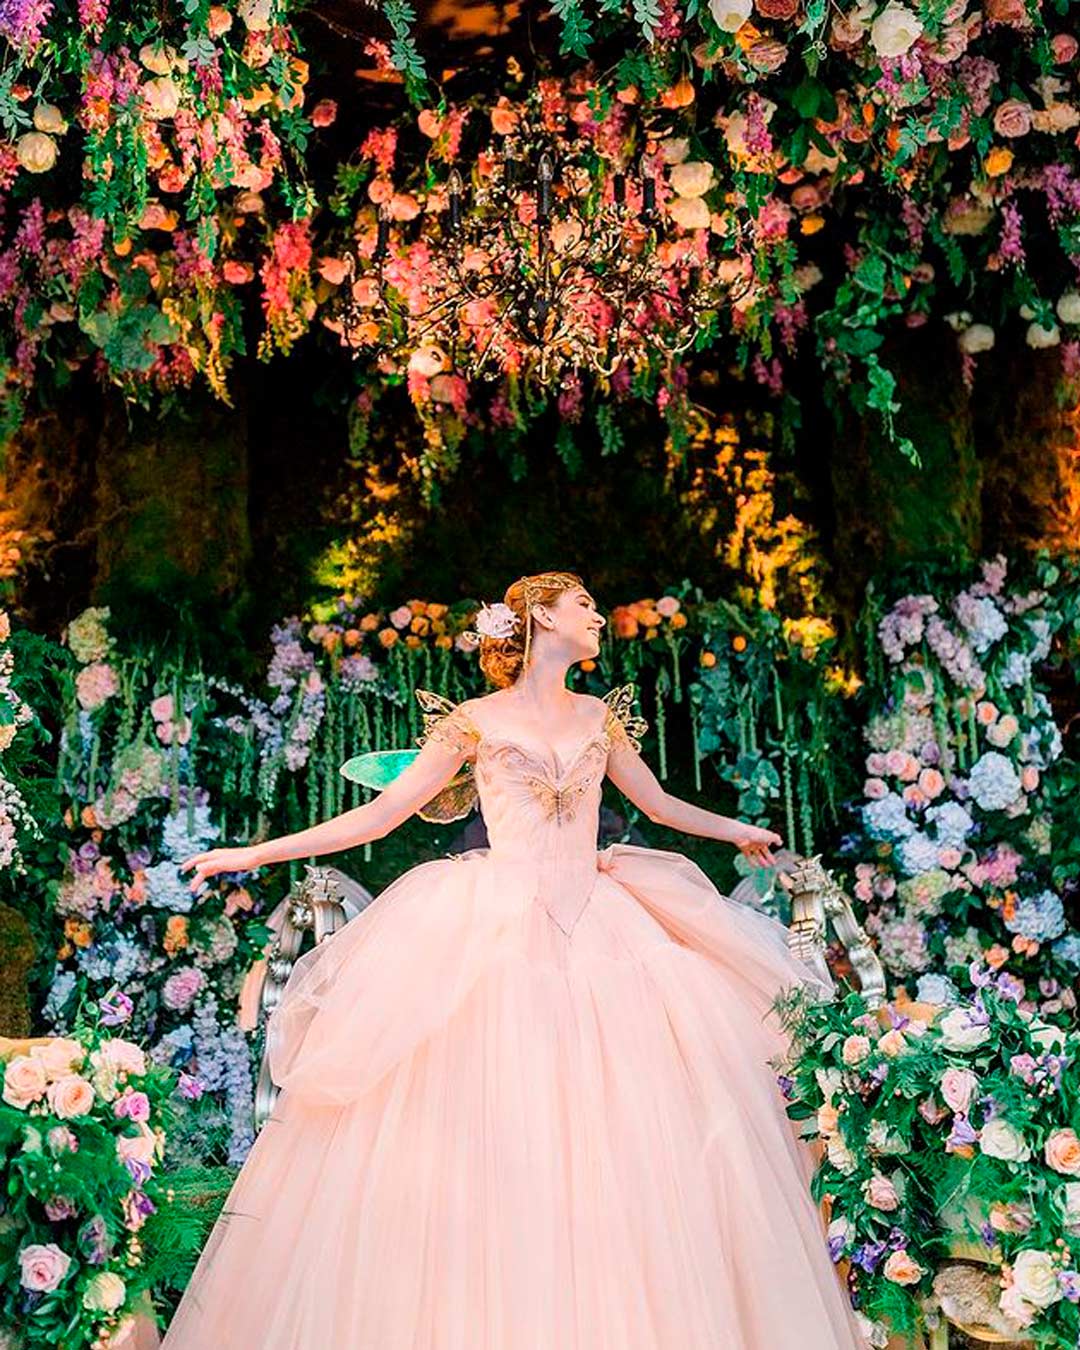 wedding trends attire bride fairy